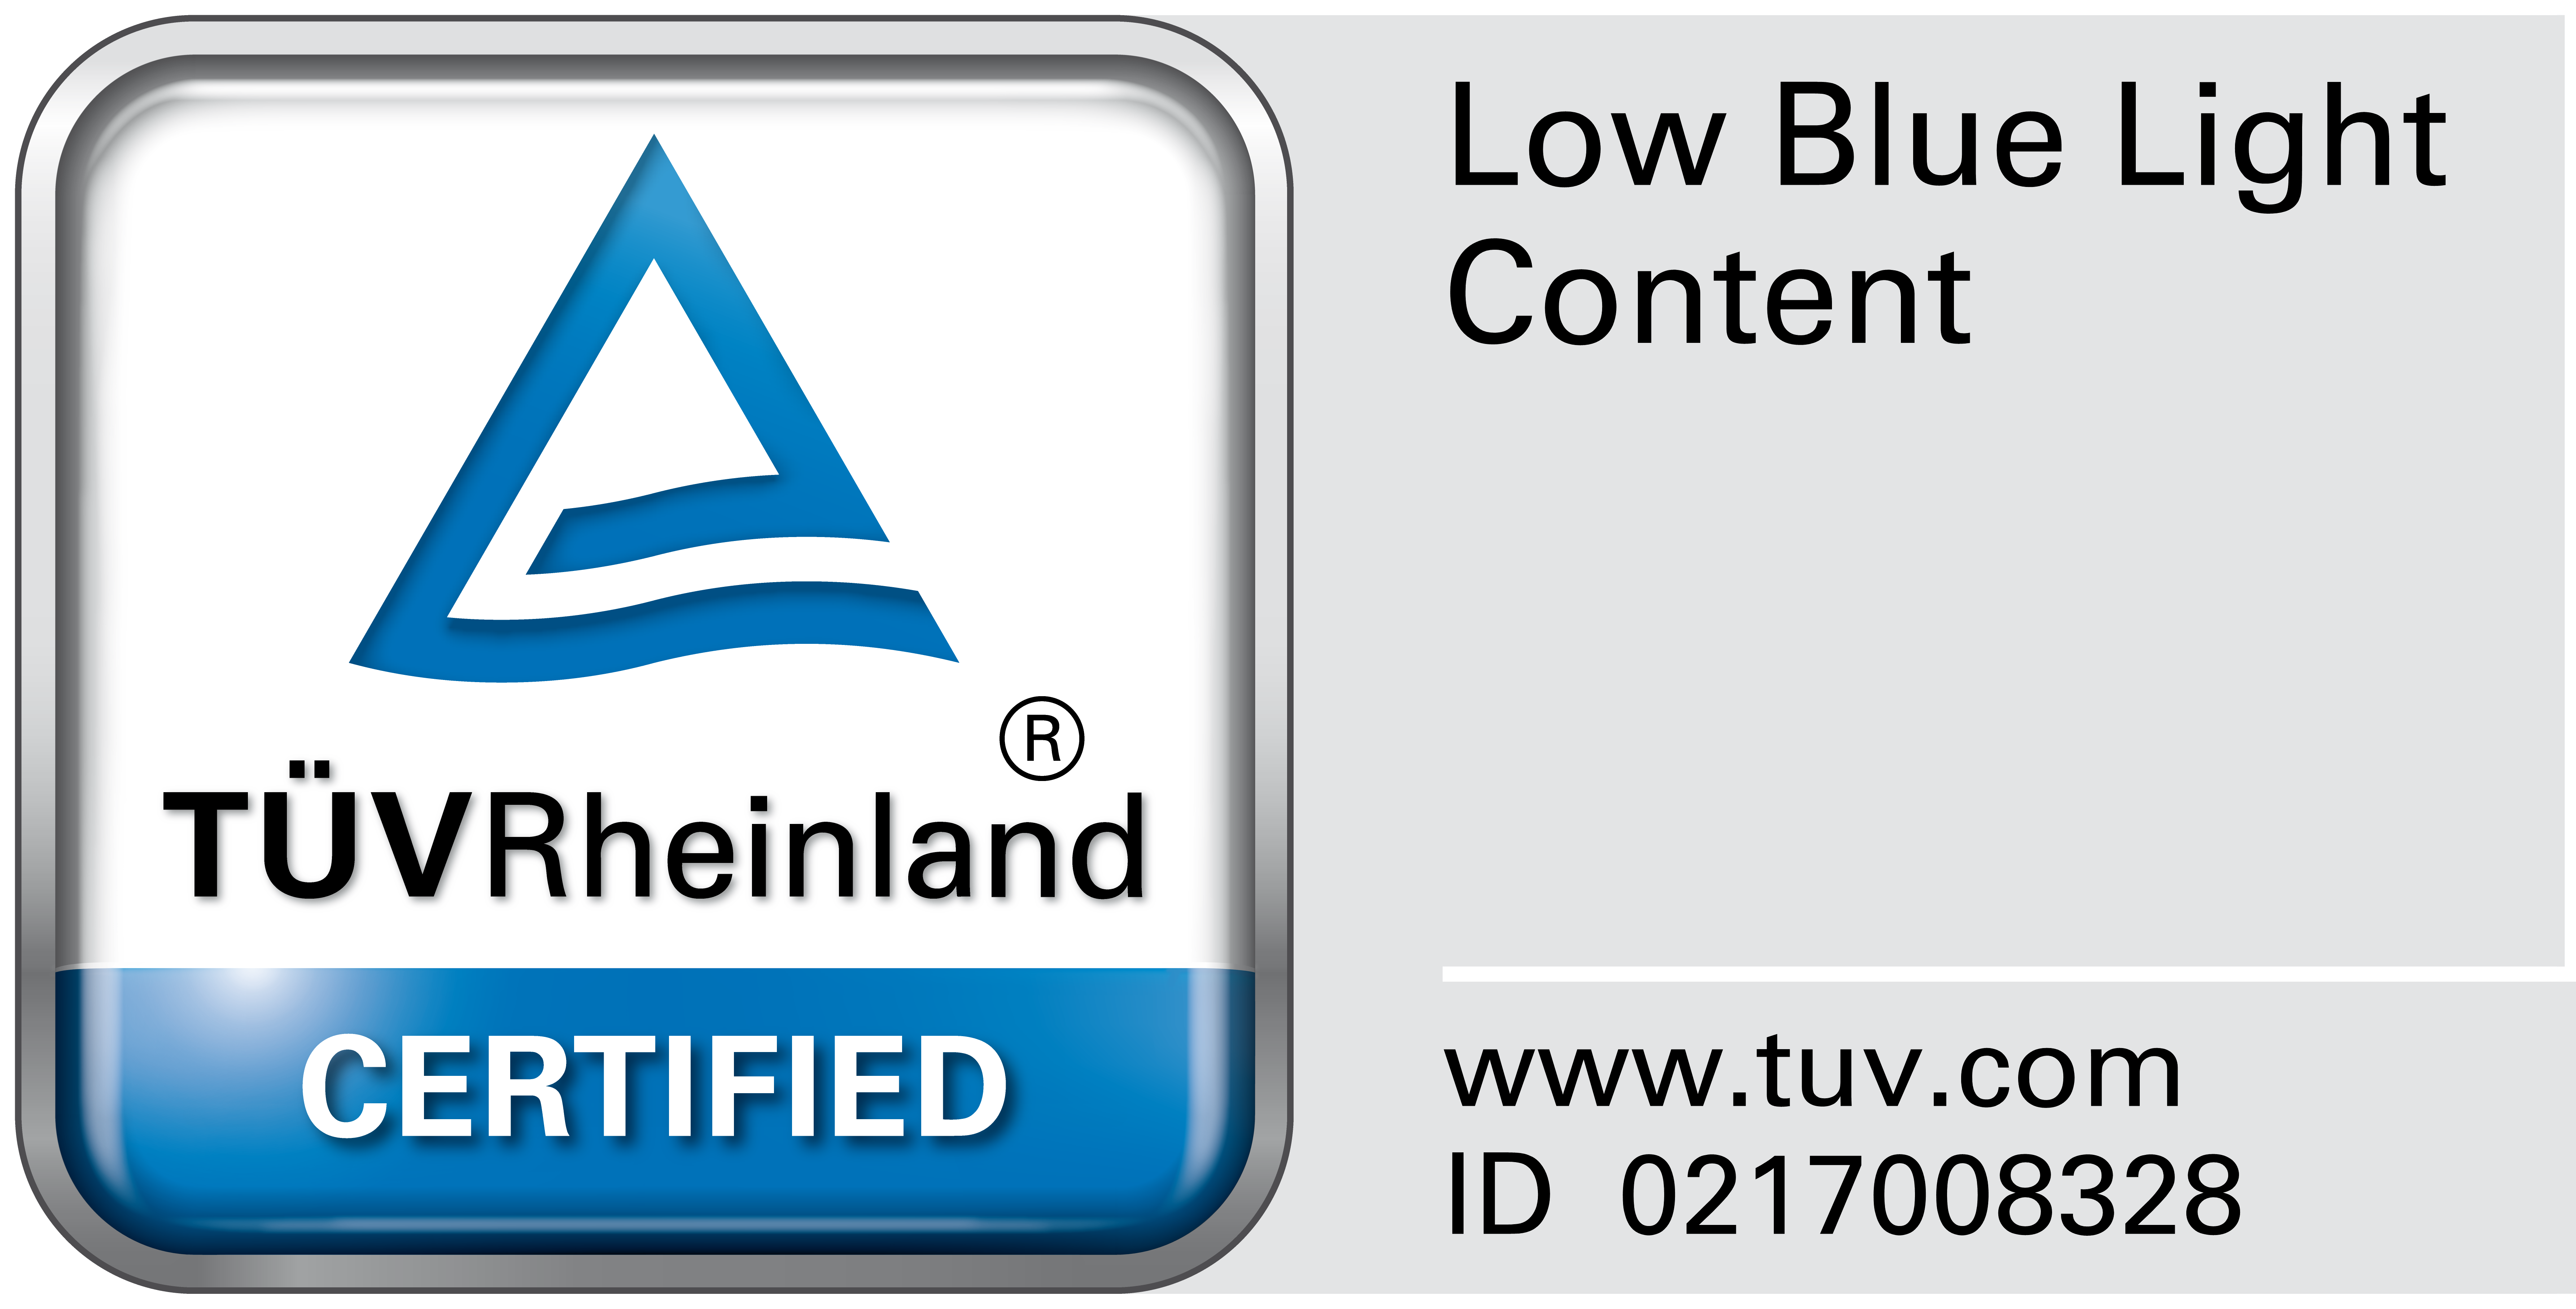 Сертификат TÜV Rheinland по снижению синего света